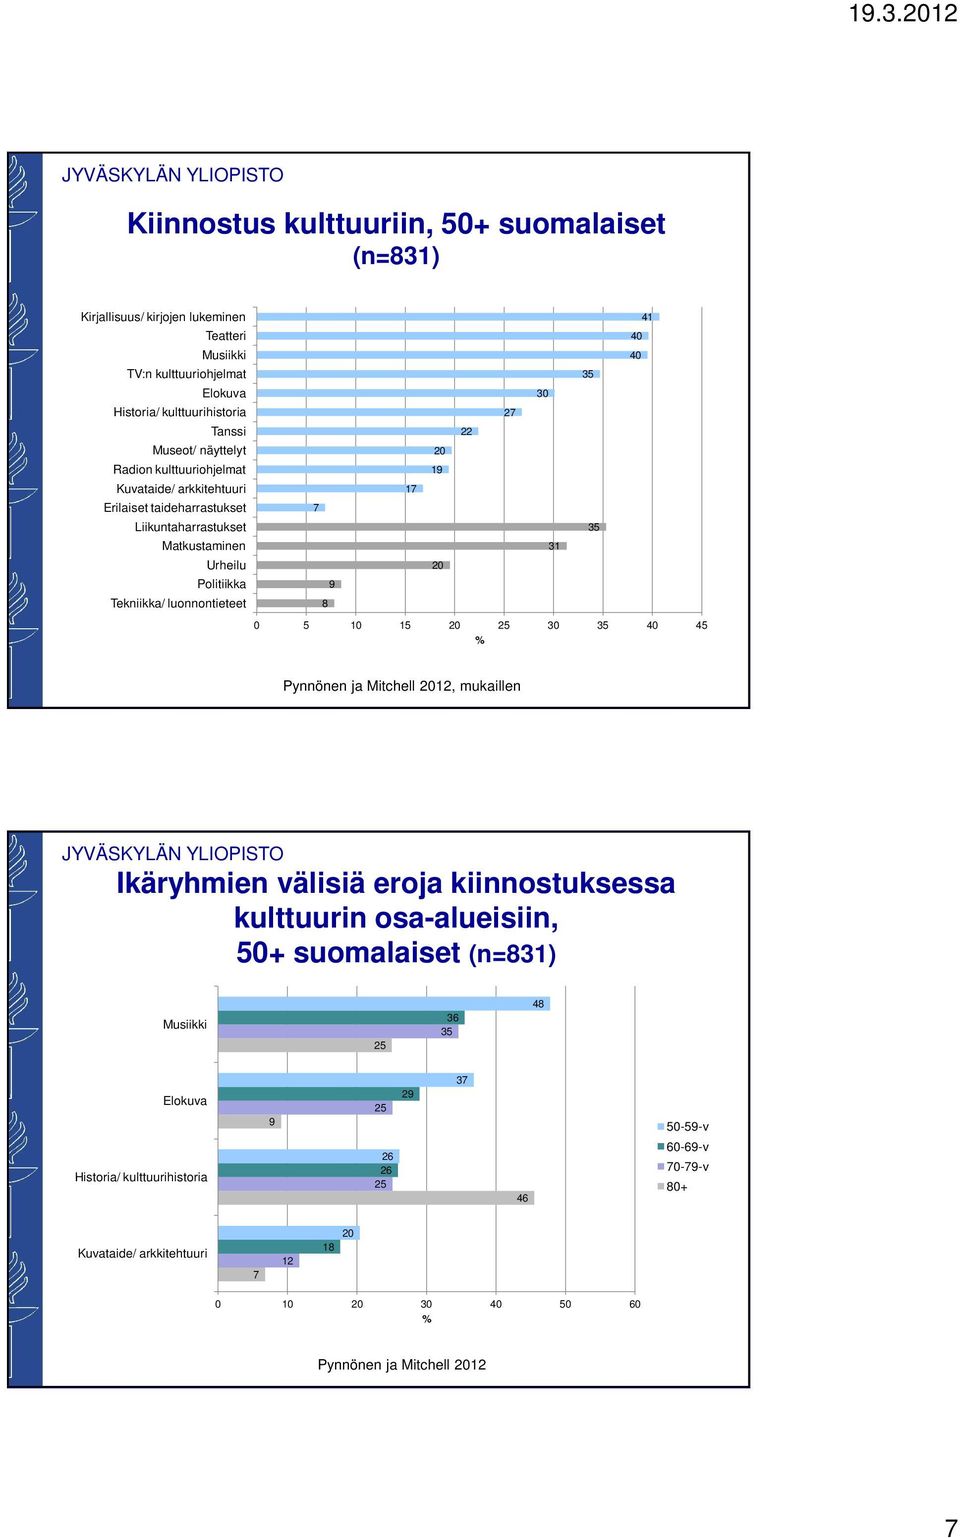 Tekniikka/ luonnontieteet 8 0 5 10 20 25 0 5 40 45 % Pynnönen ja Mitchell 2012, mukaillen Ikäryhmien välisiä eroja kiinnostuksessa kulttuurin osa-alueisiin, 50+ suomalaiset